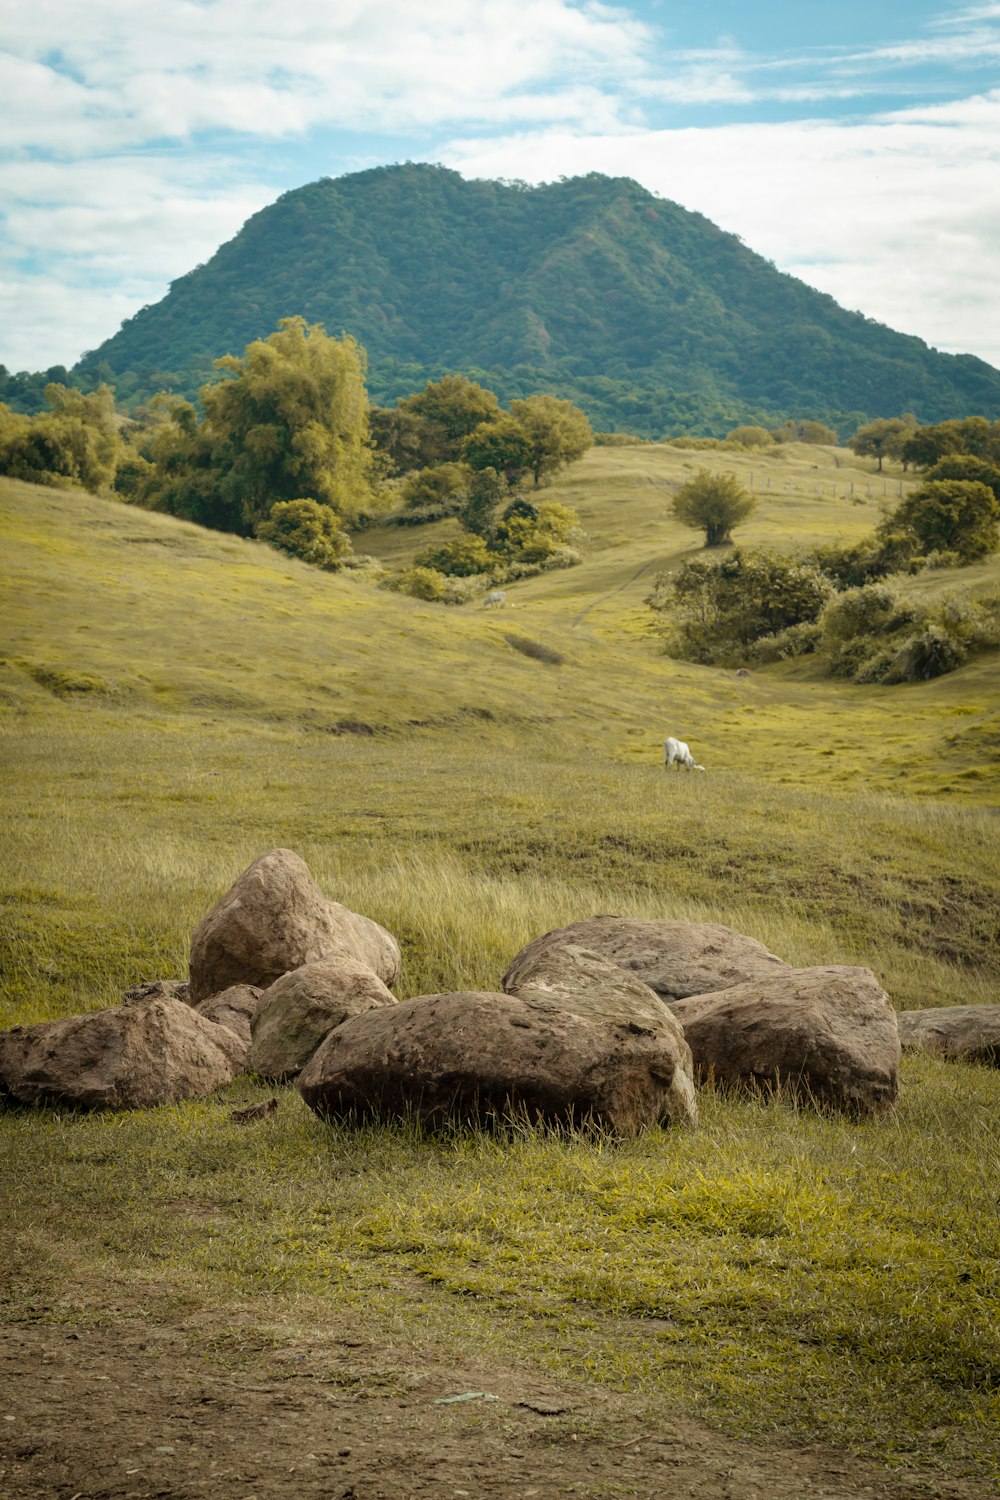 white bird on brown rock near green grass field during daytime